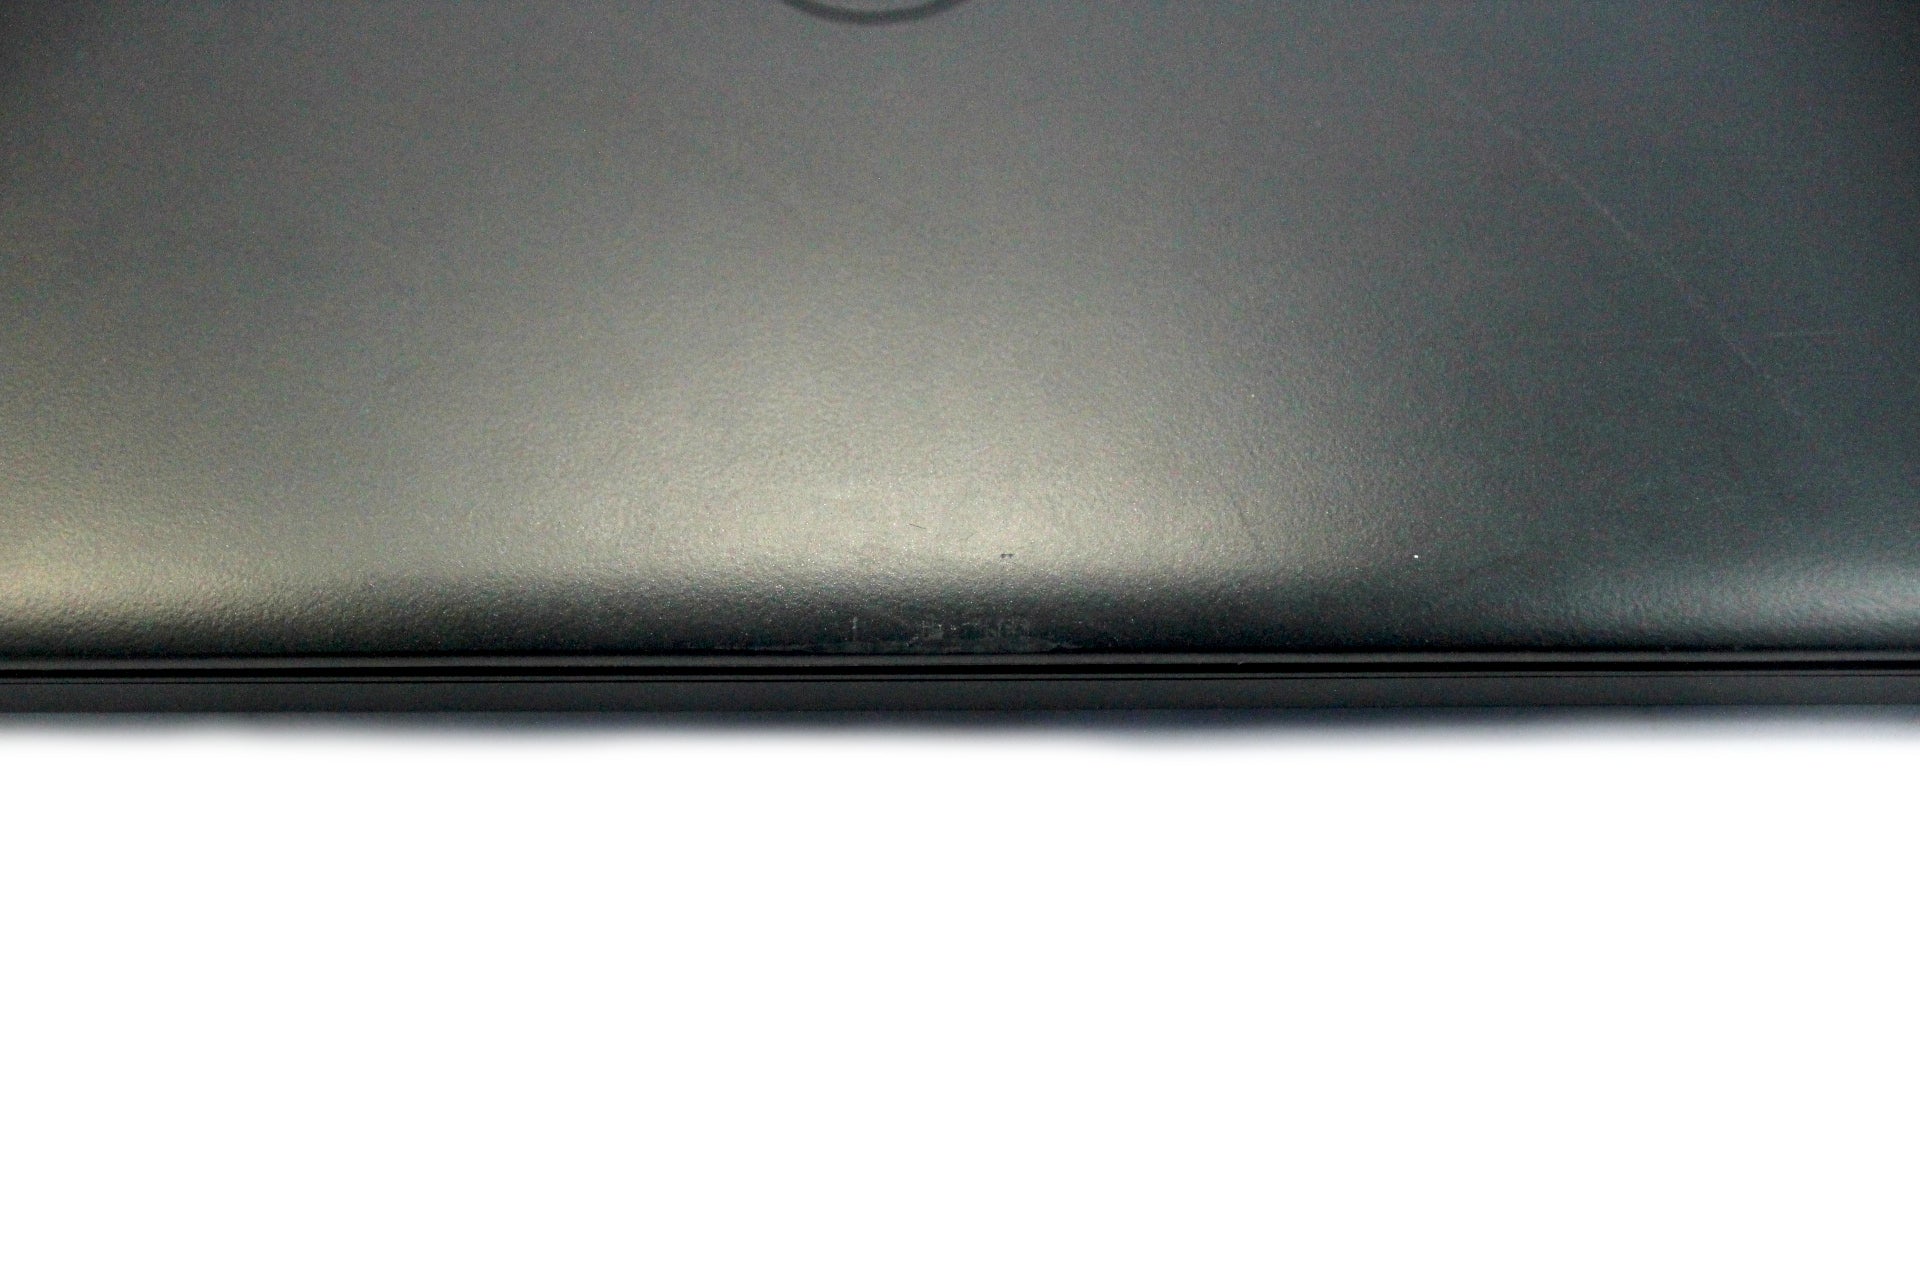 Dell Latitude E5550 Laptop, 15.5" i5 5th Gen, 8GB RAM, 256GB SSD, Windows 11